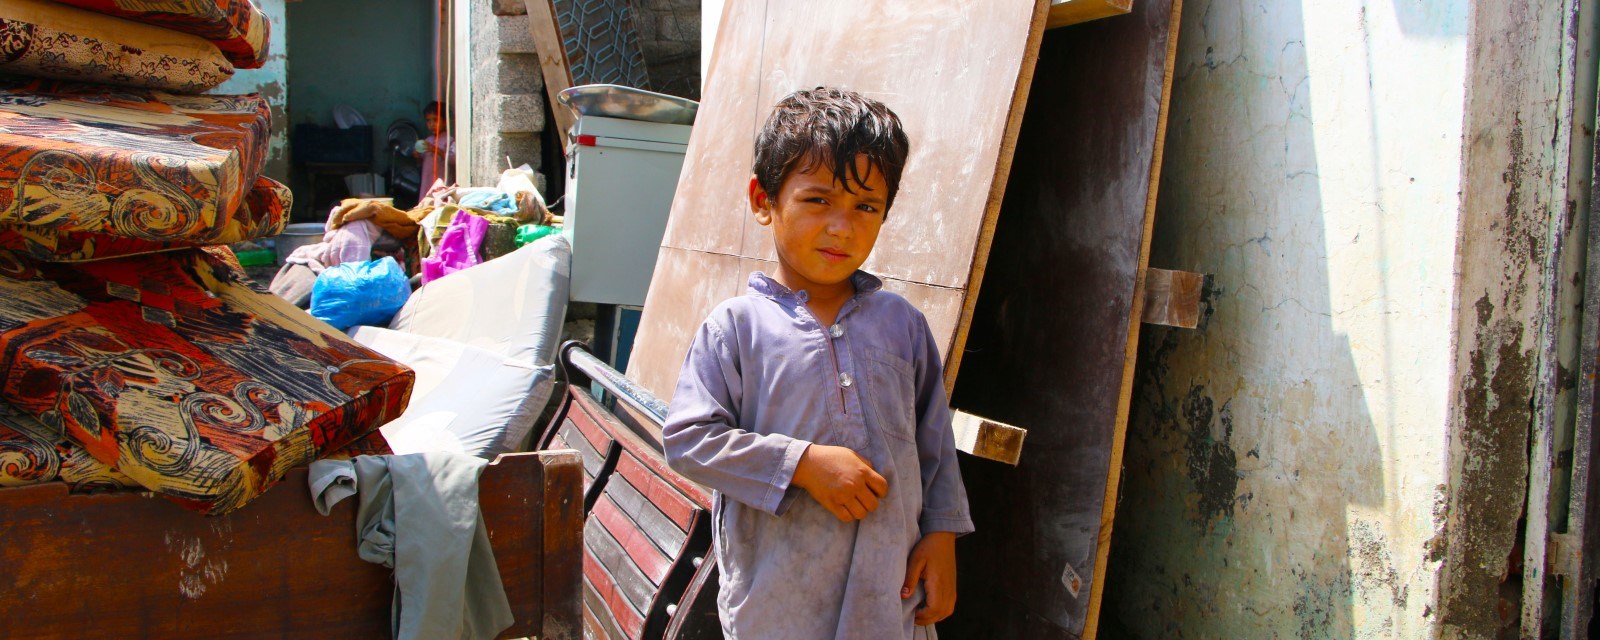 En liten gutt står i en bakgate omgitt av plater, møbler og byggemateriell